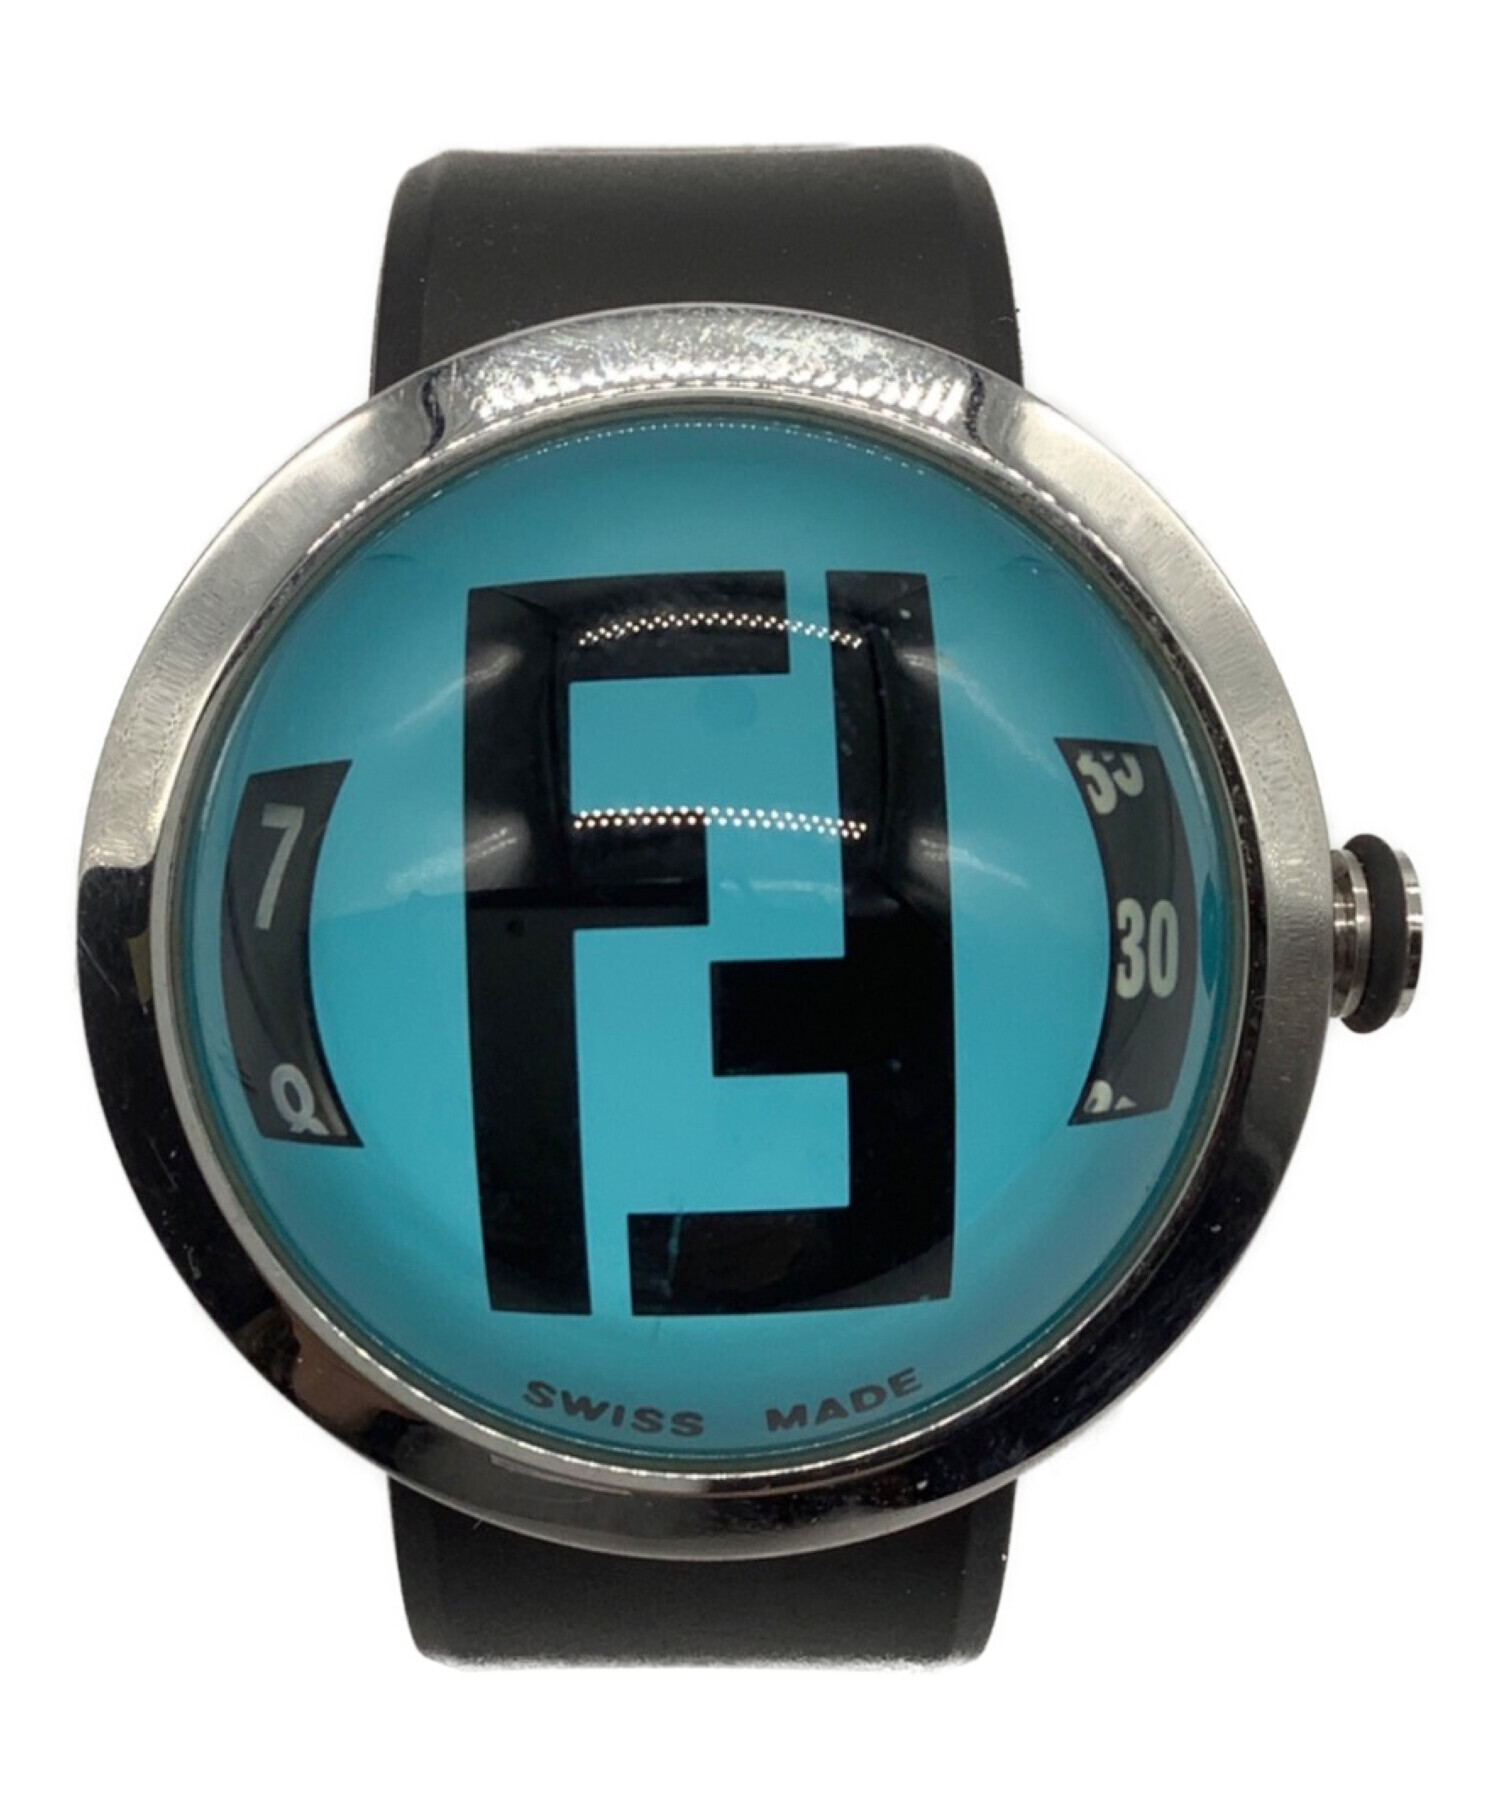 FENDI (フェンディ) ドーム型腕時計